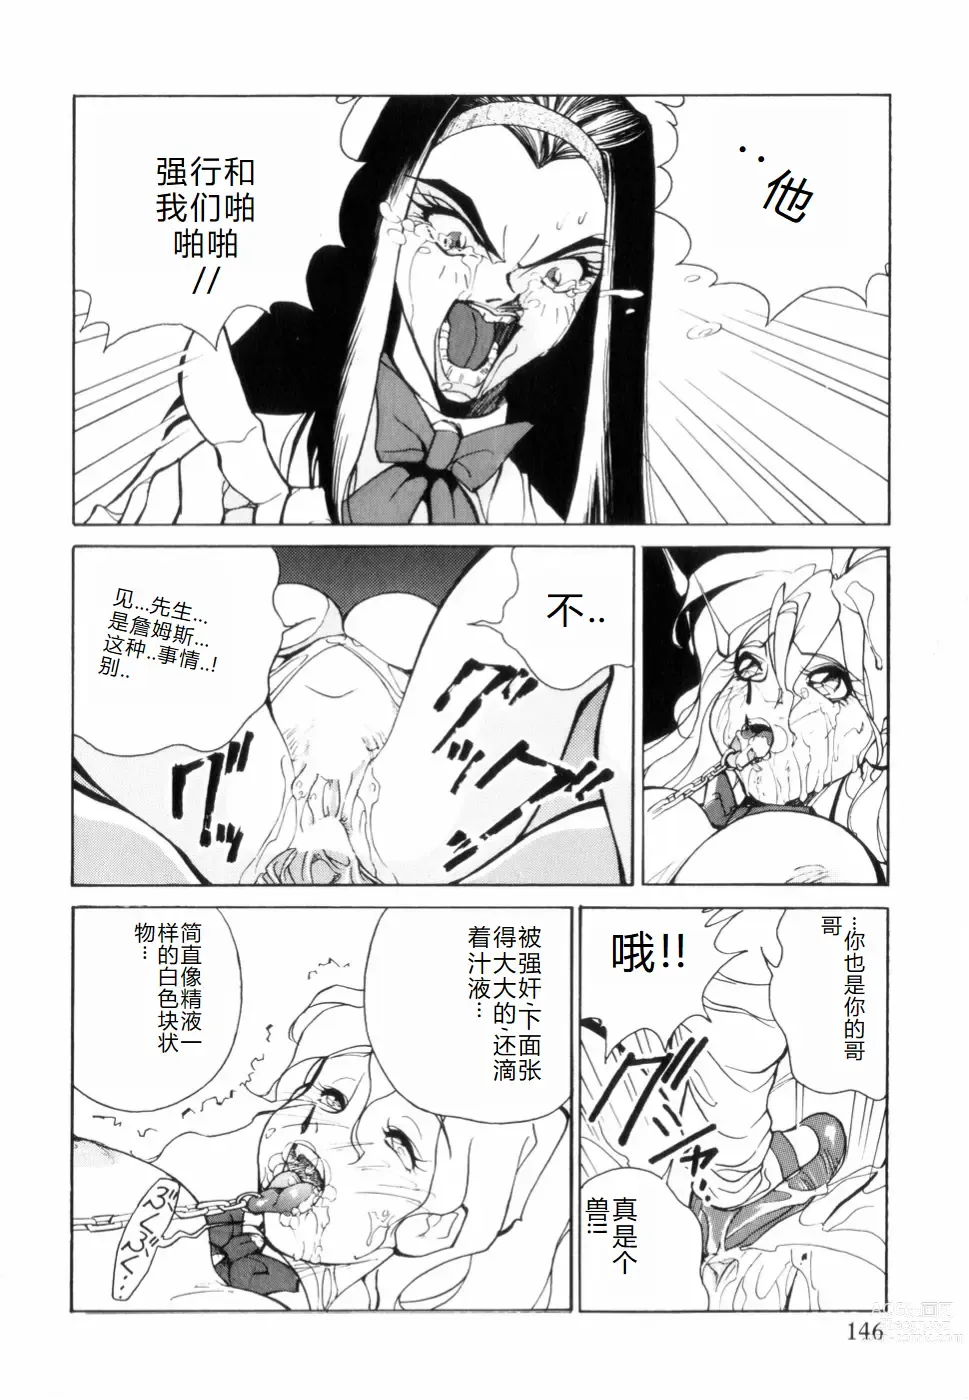 Page 150 of manga Hakujuu no Hasha